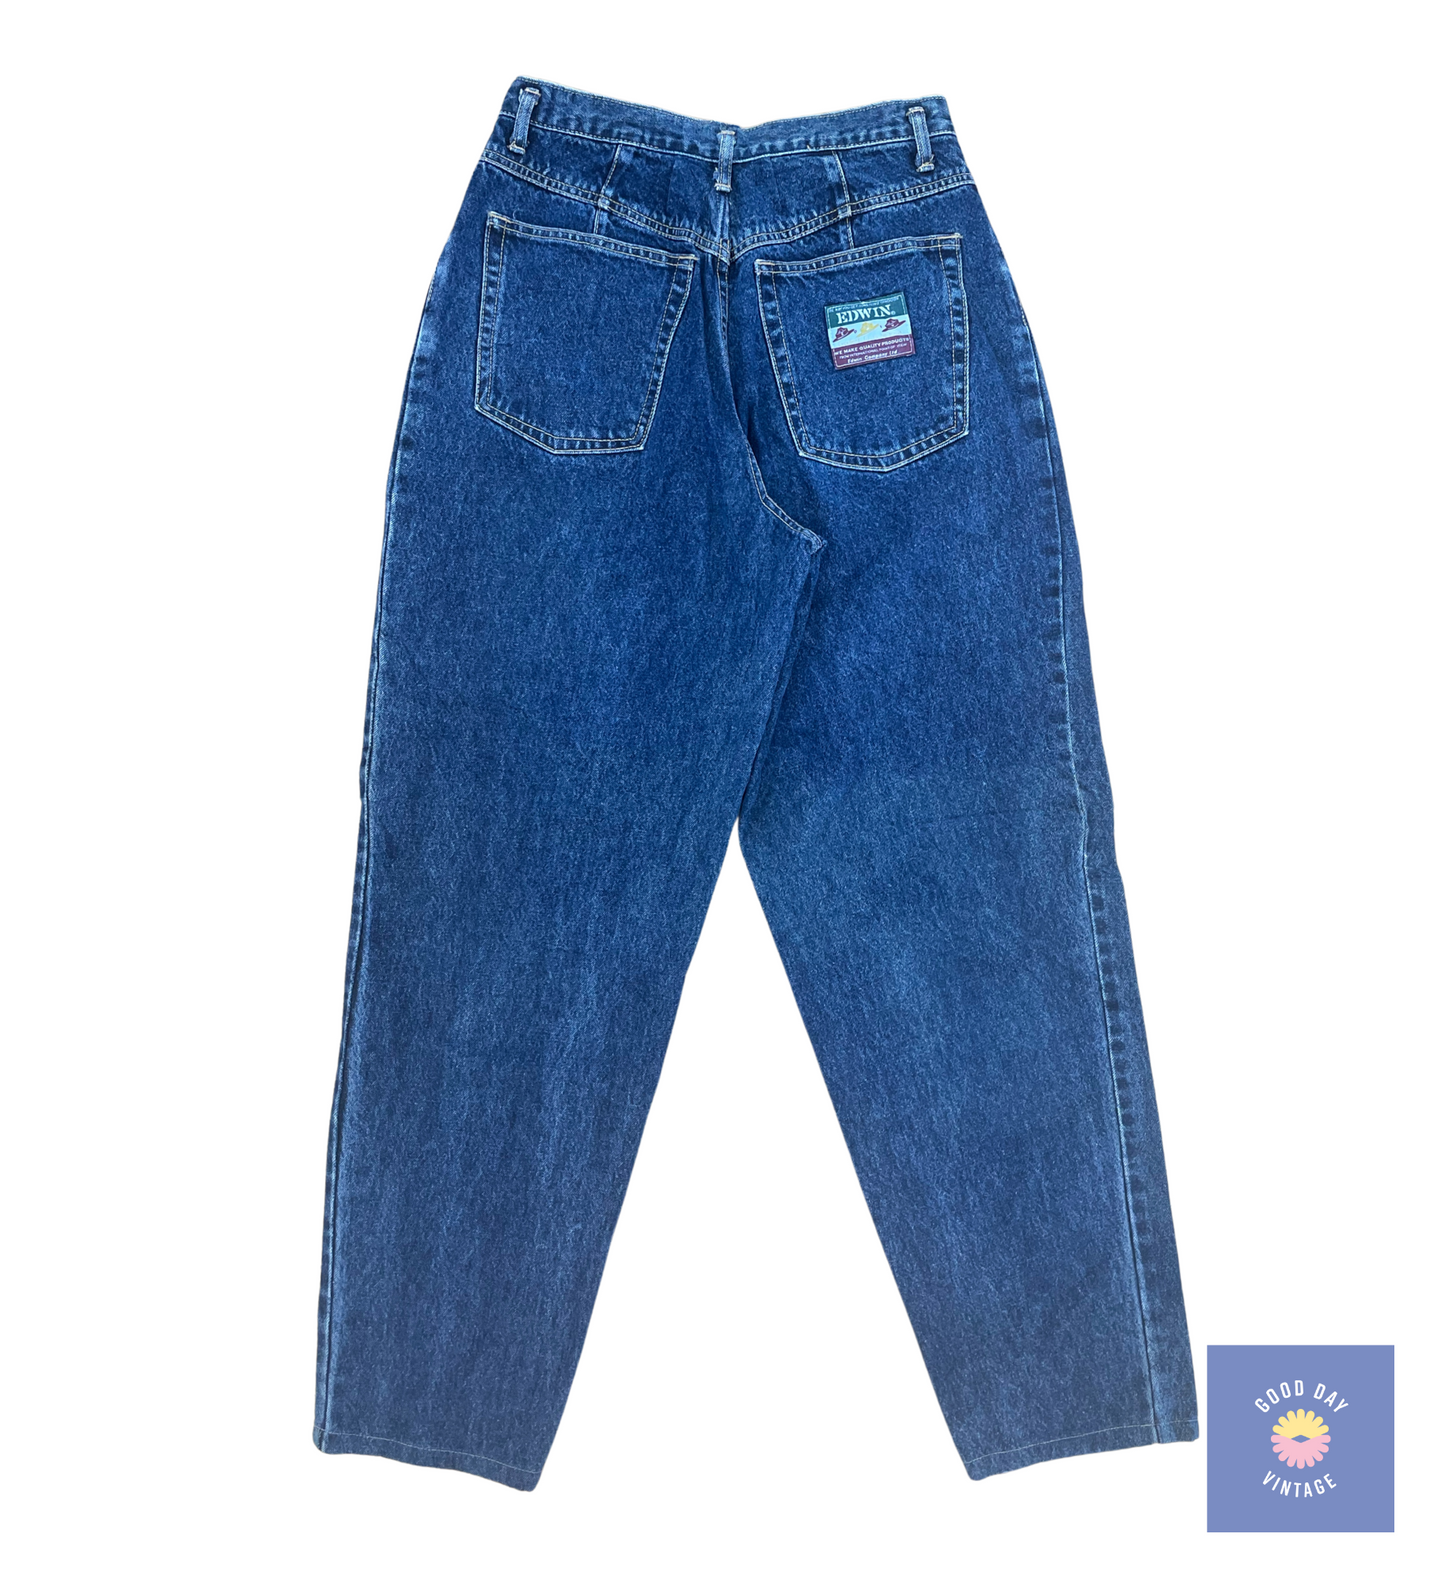 1980's Edwin Co Jeans